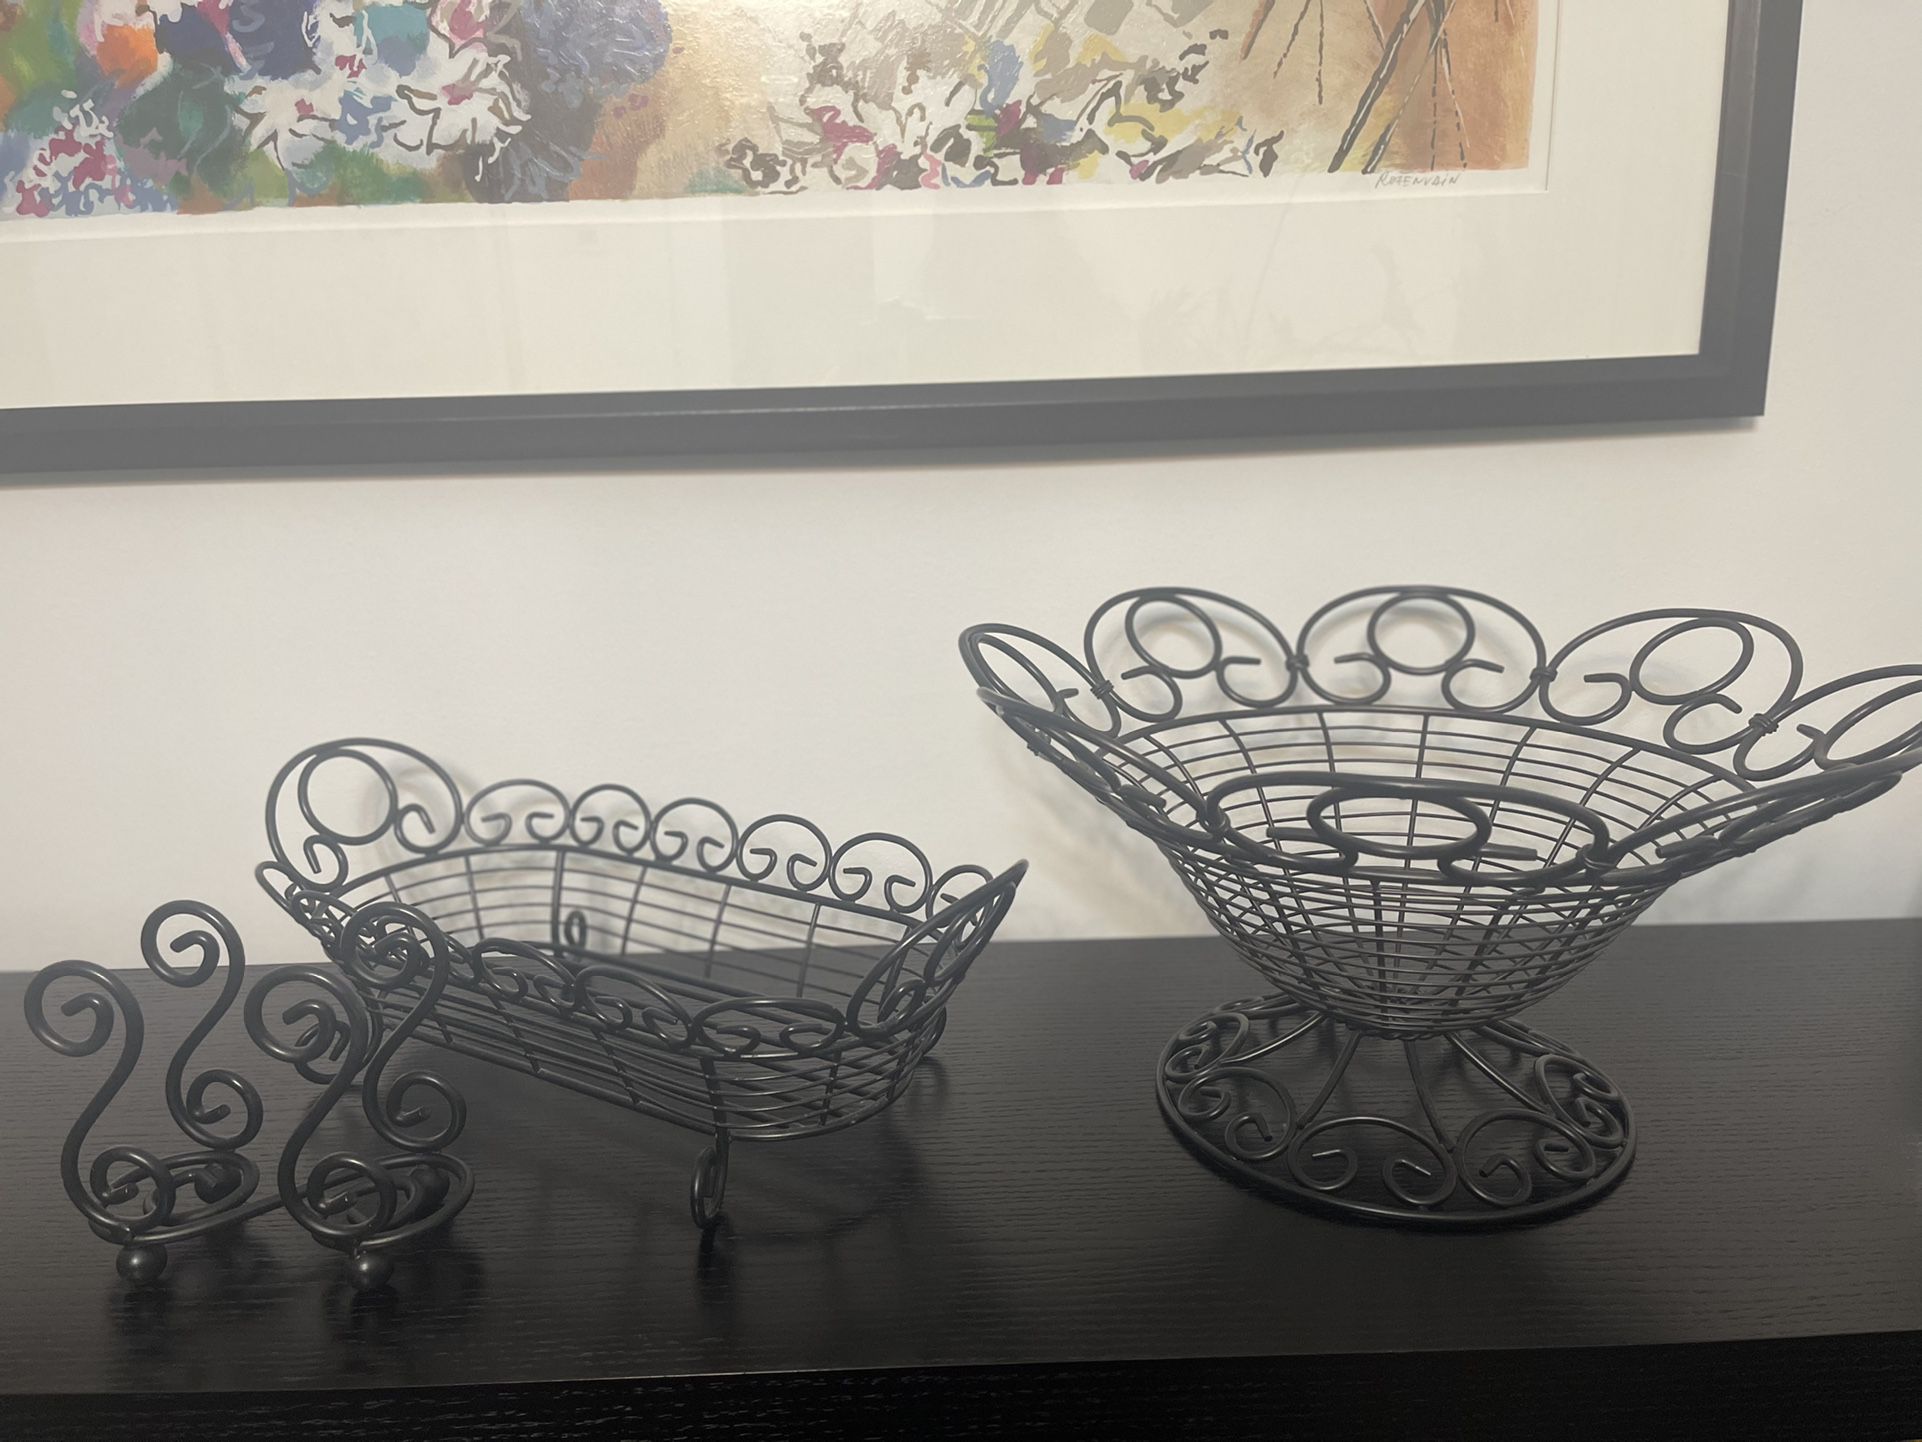 Black metal Set: Fruit/Decorative Bowl, Bread  Basket & Napkin Holder 